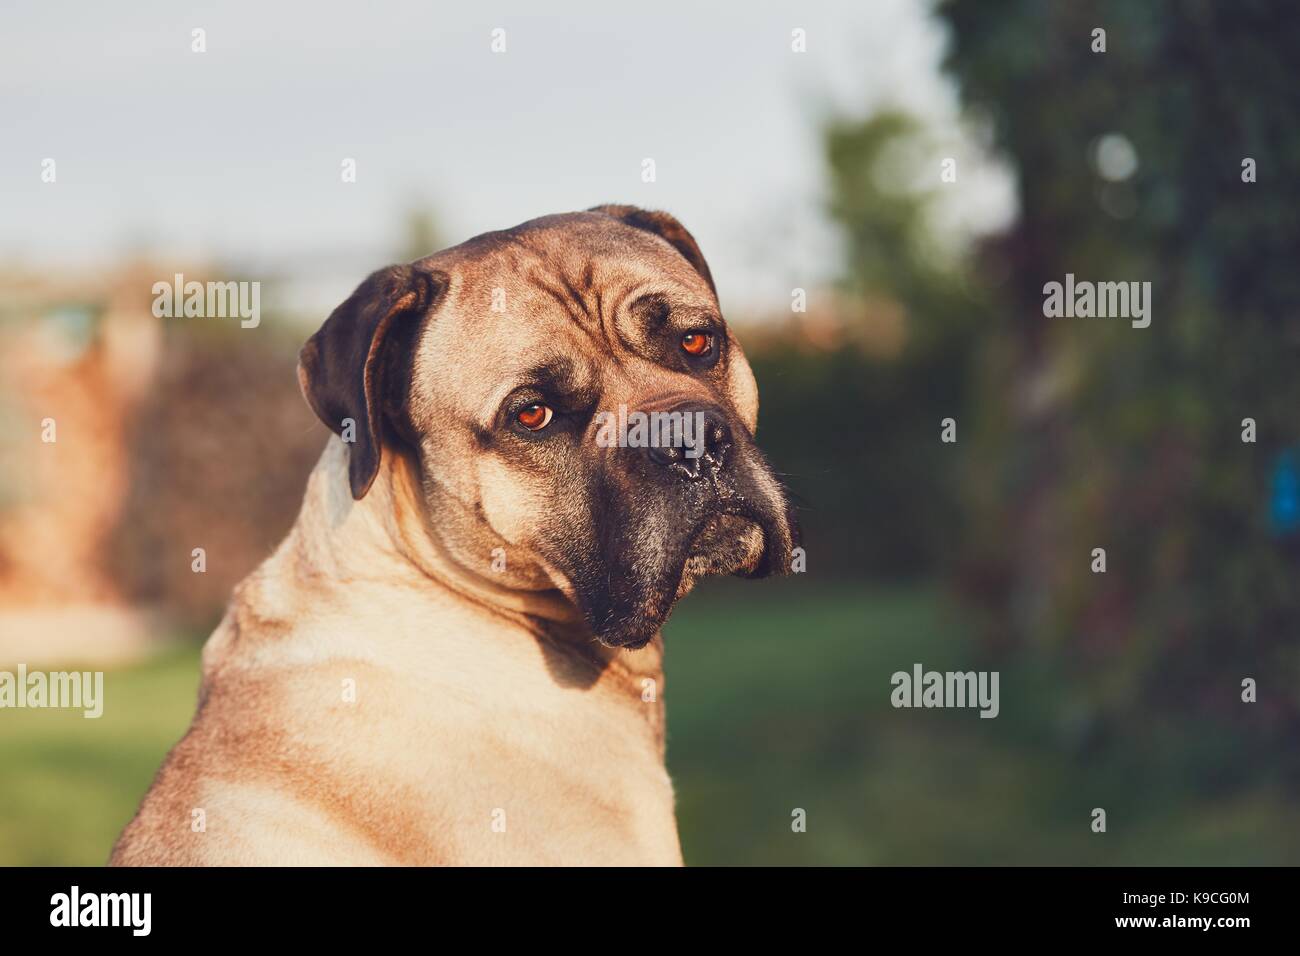 Traurig Aussehen der große Hund. Cane Corso Hund suchen an der Kamera. Themen Loyalität, verloren oder Verlangen. Stockfoto